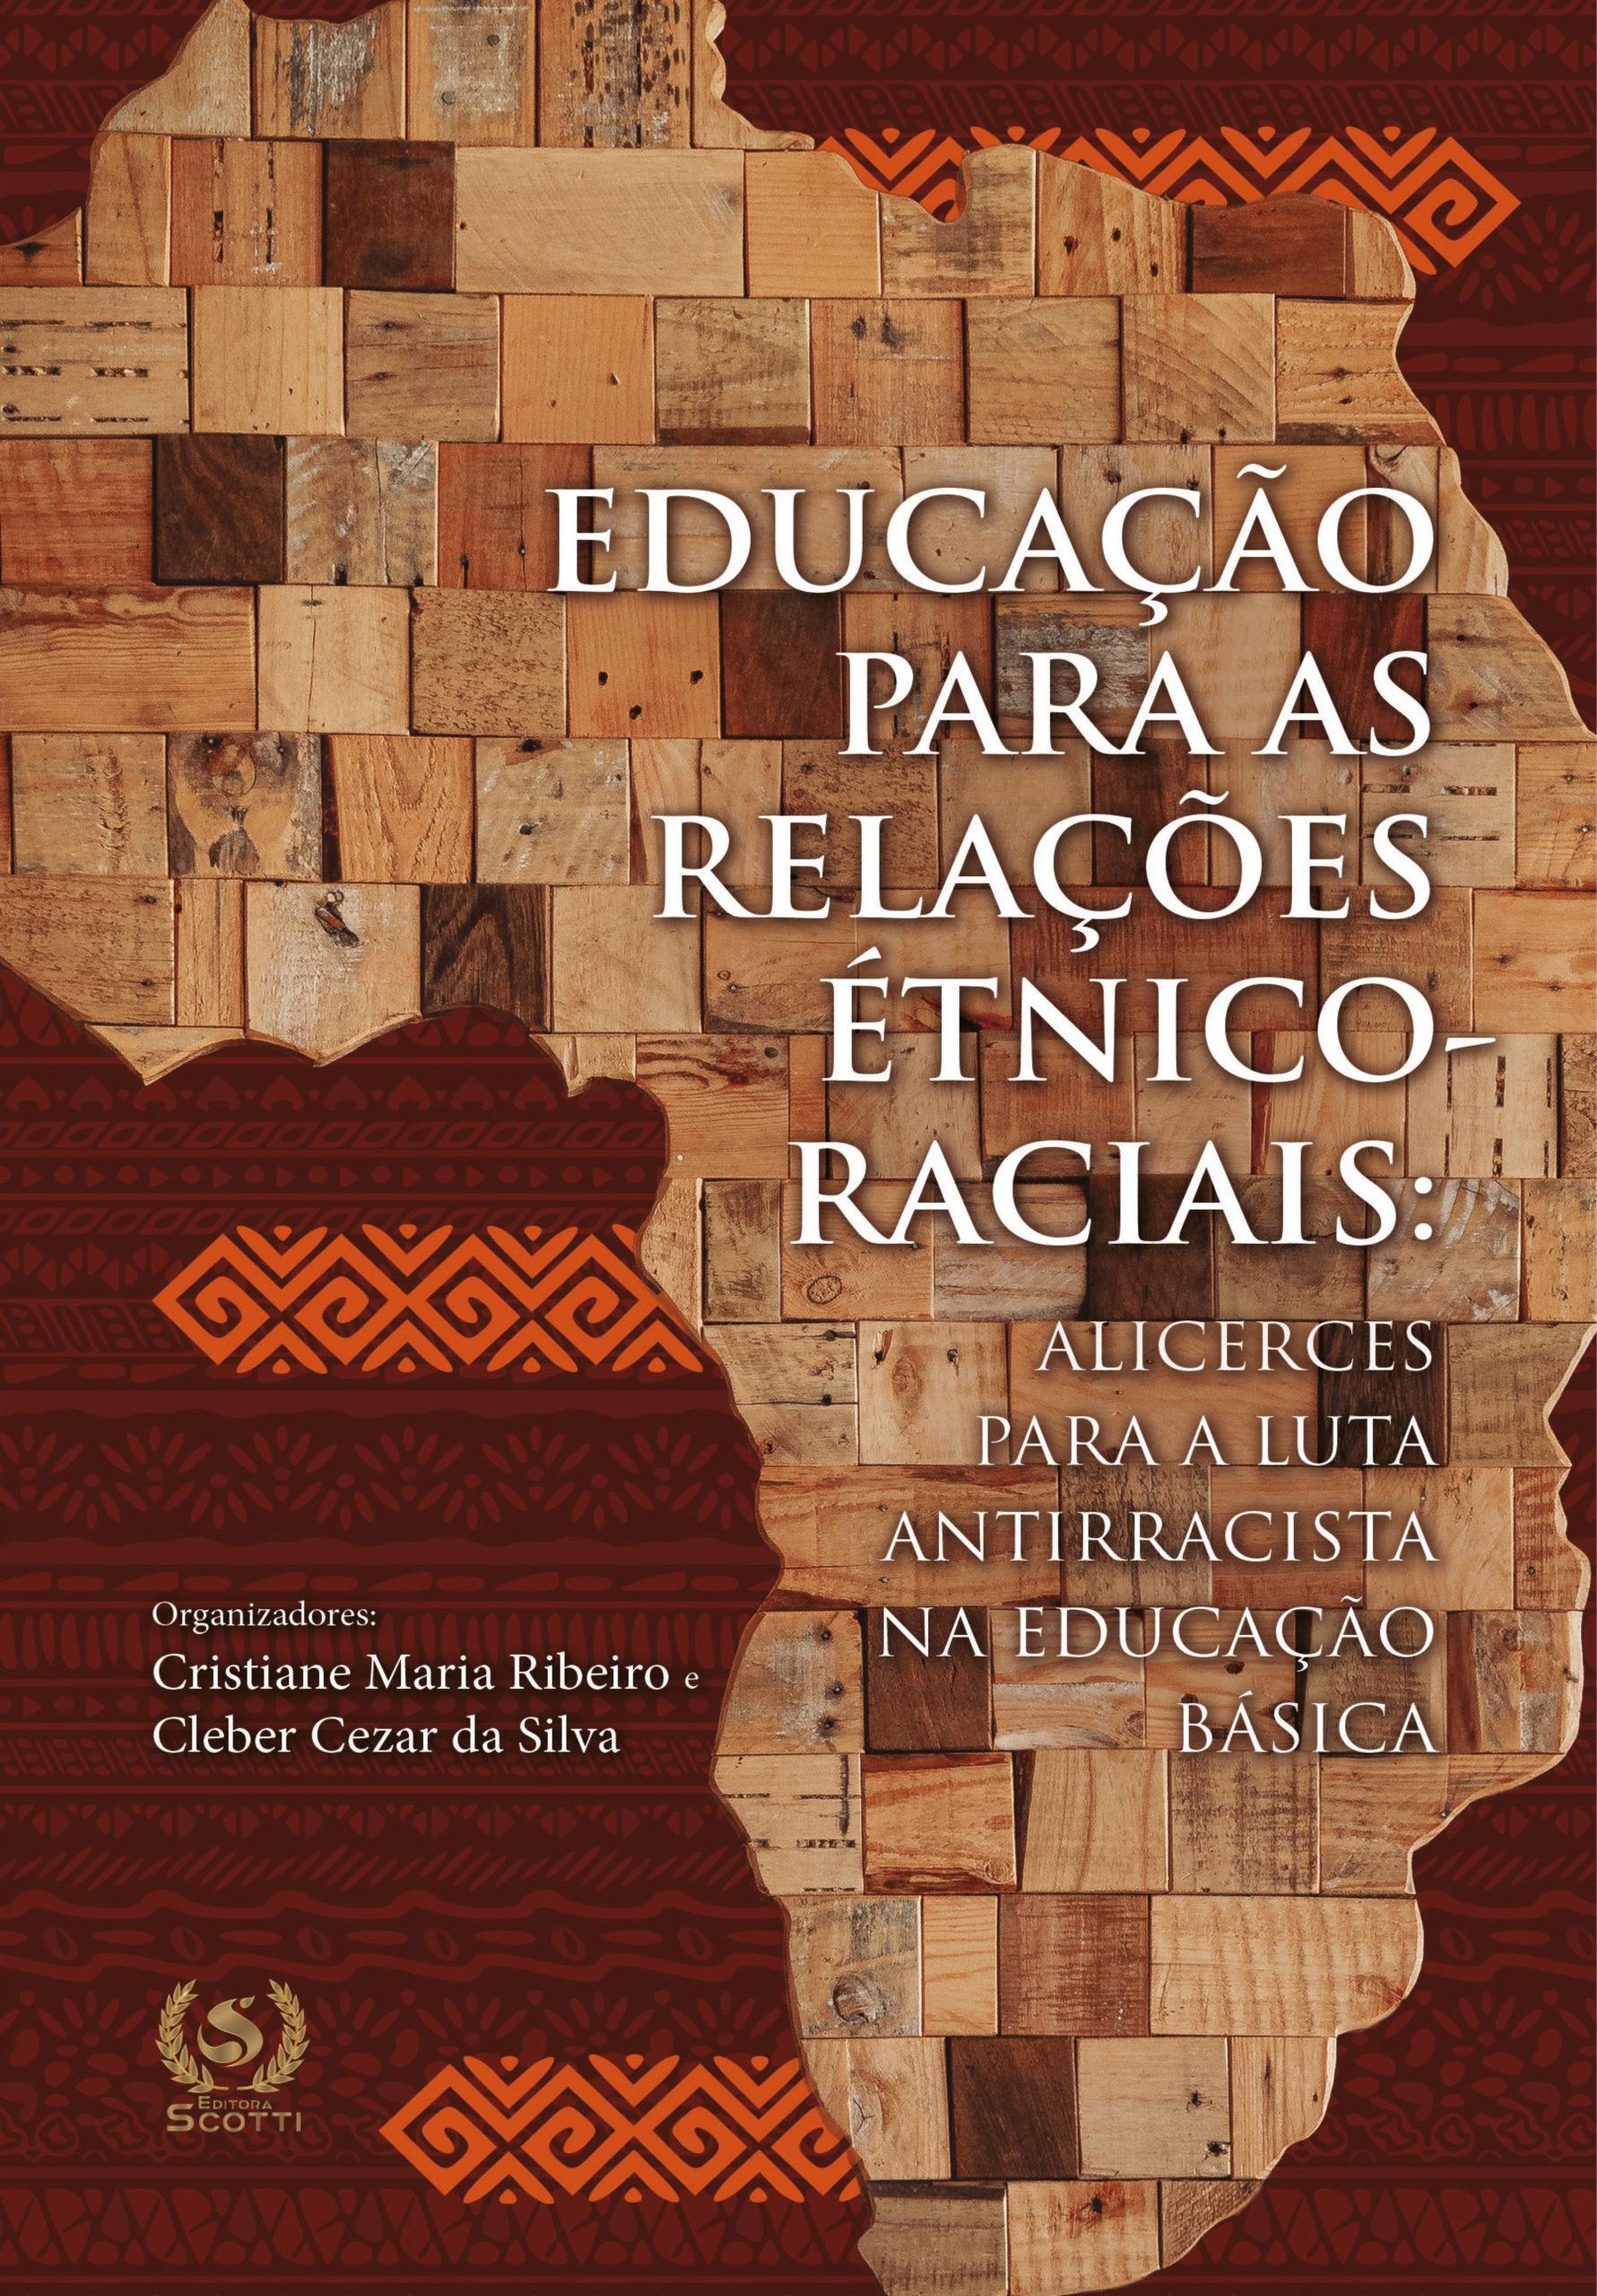 Educação para as relações étnico-raciais: Alicerces para a luta antirracista na educação básica